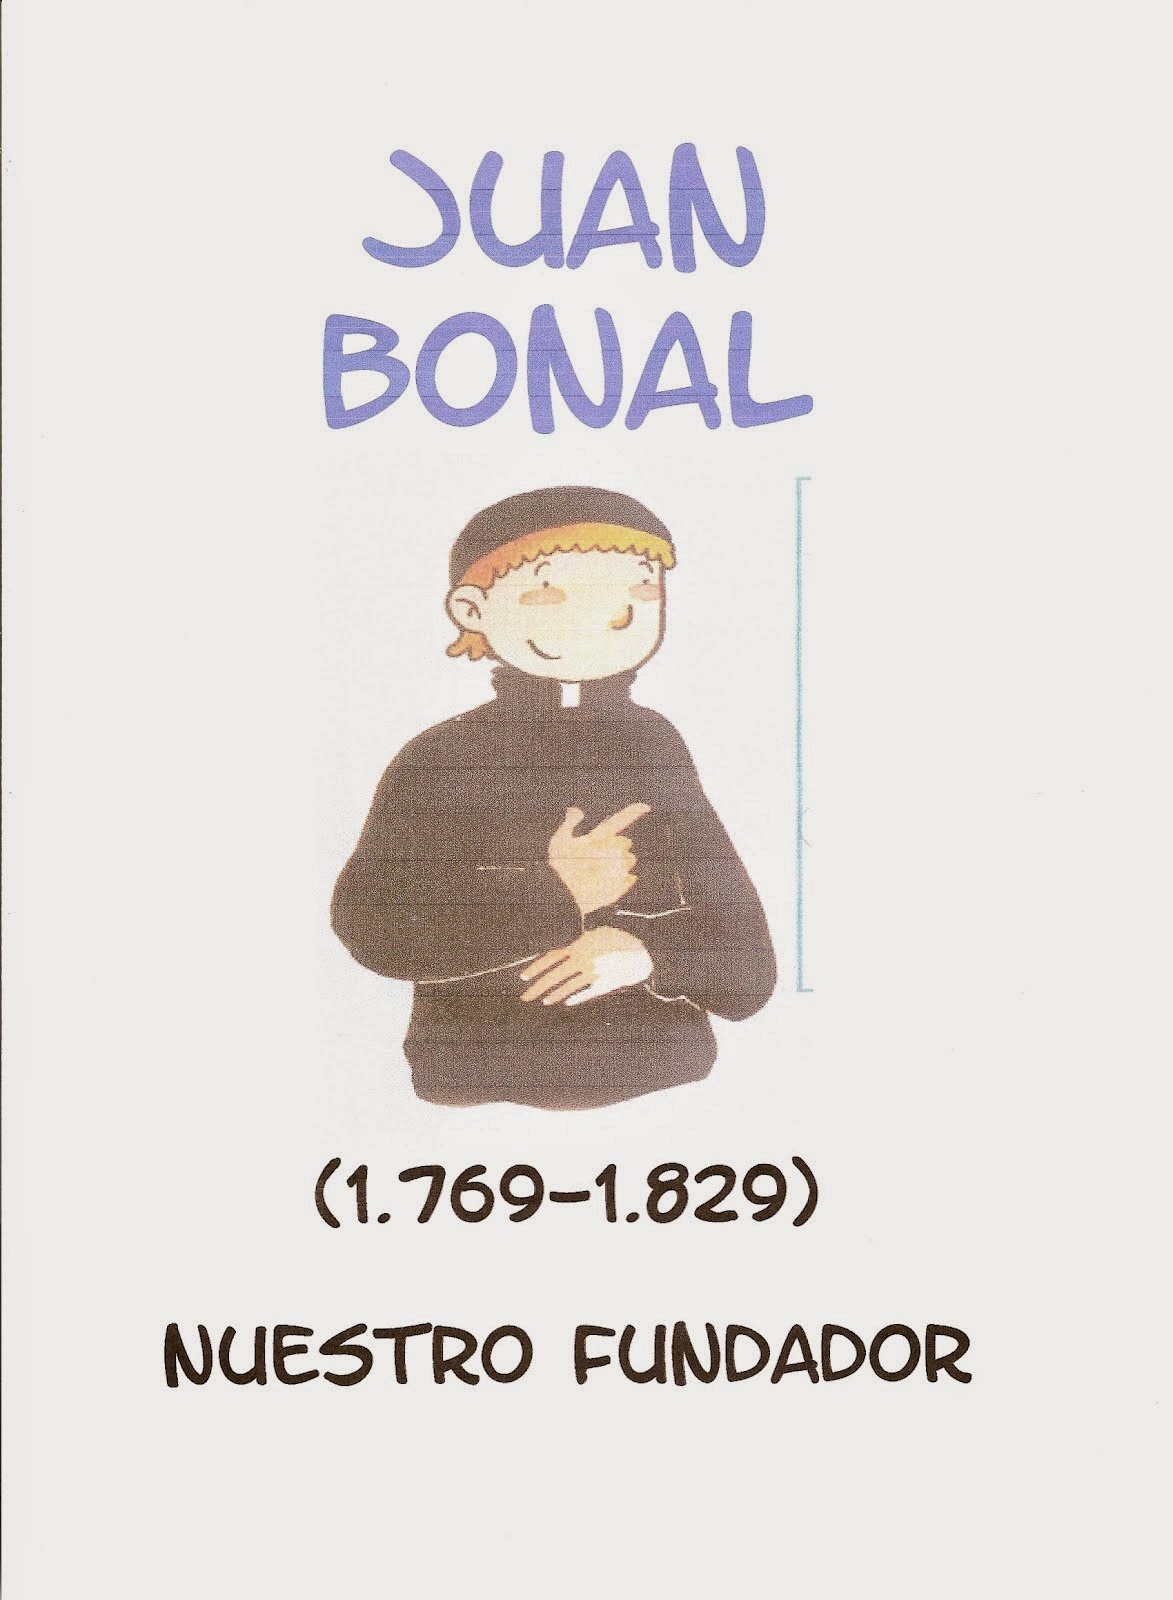 Padre Juan Bonal